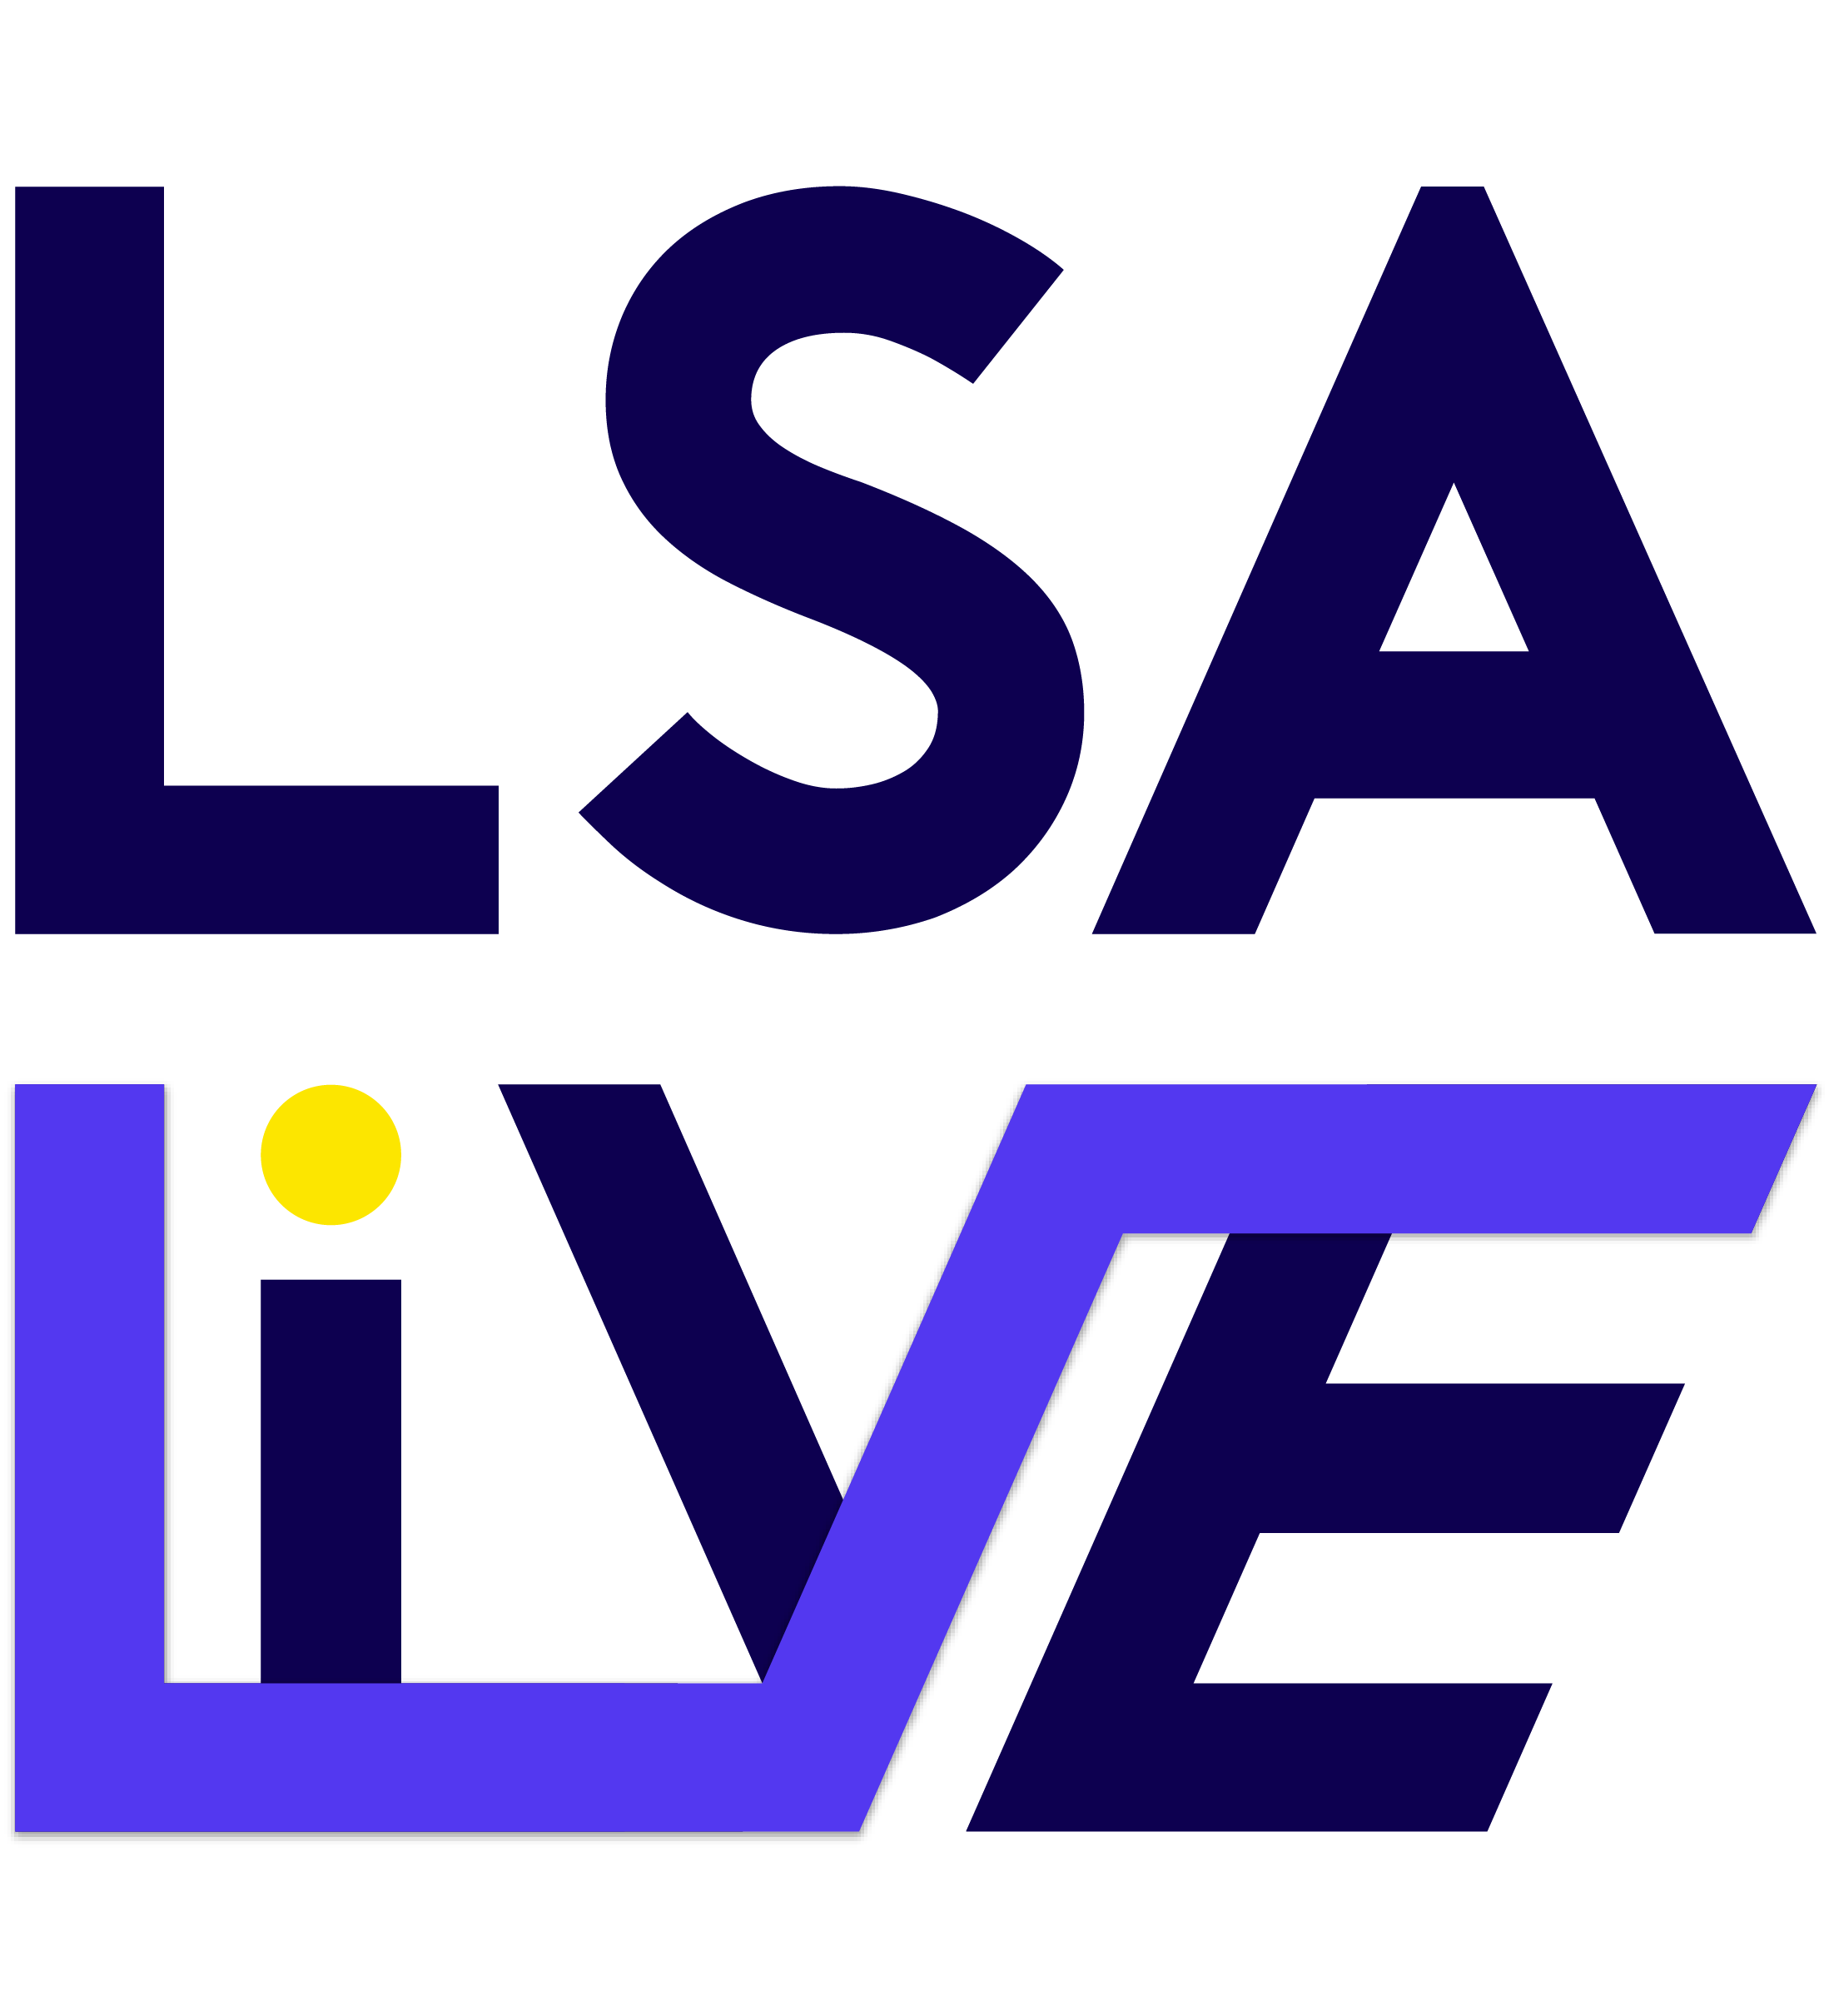 LSA Live 2021